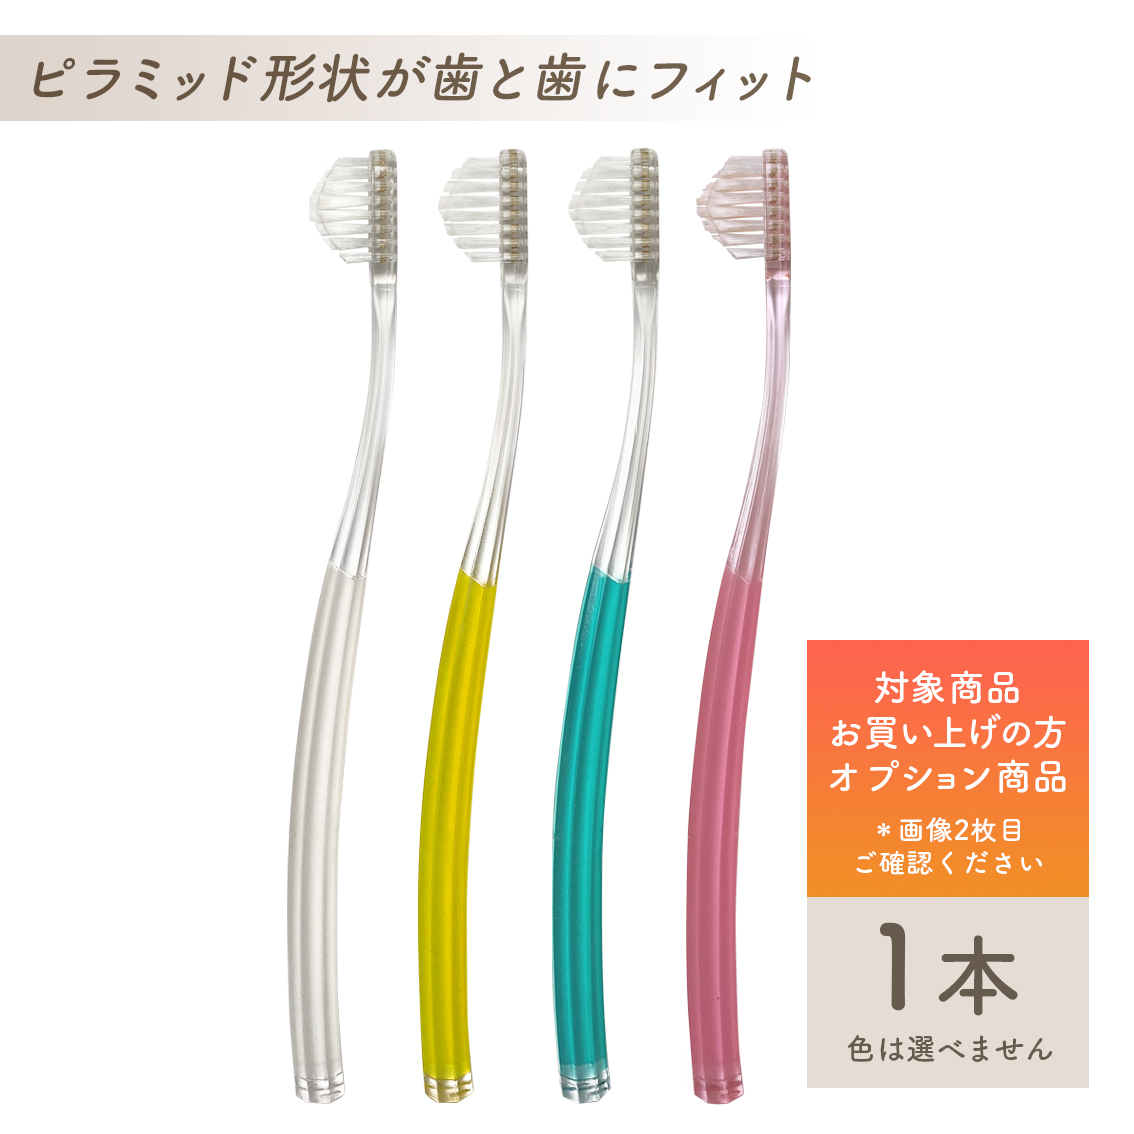 奇跡の歯ブラシ 大人用2本+こども用 2本 合計4本セット 色選べます！ 通販